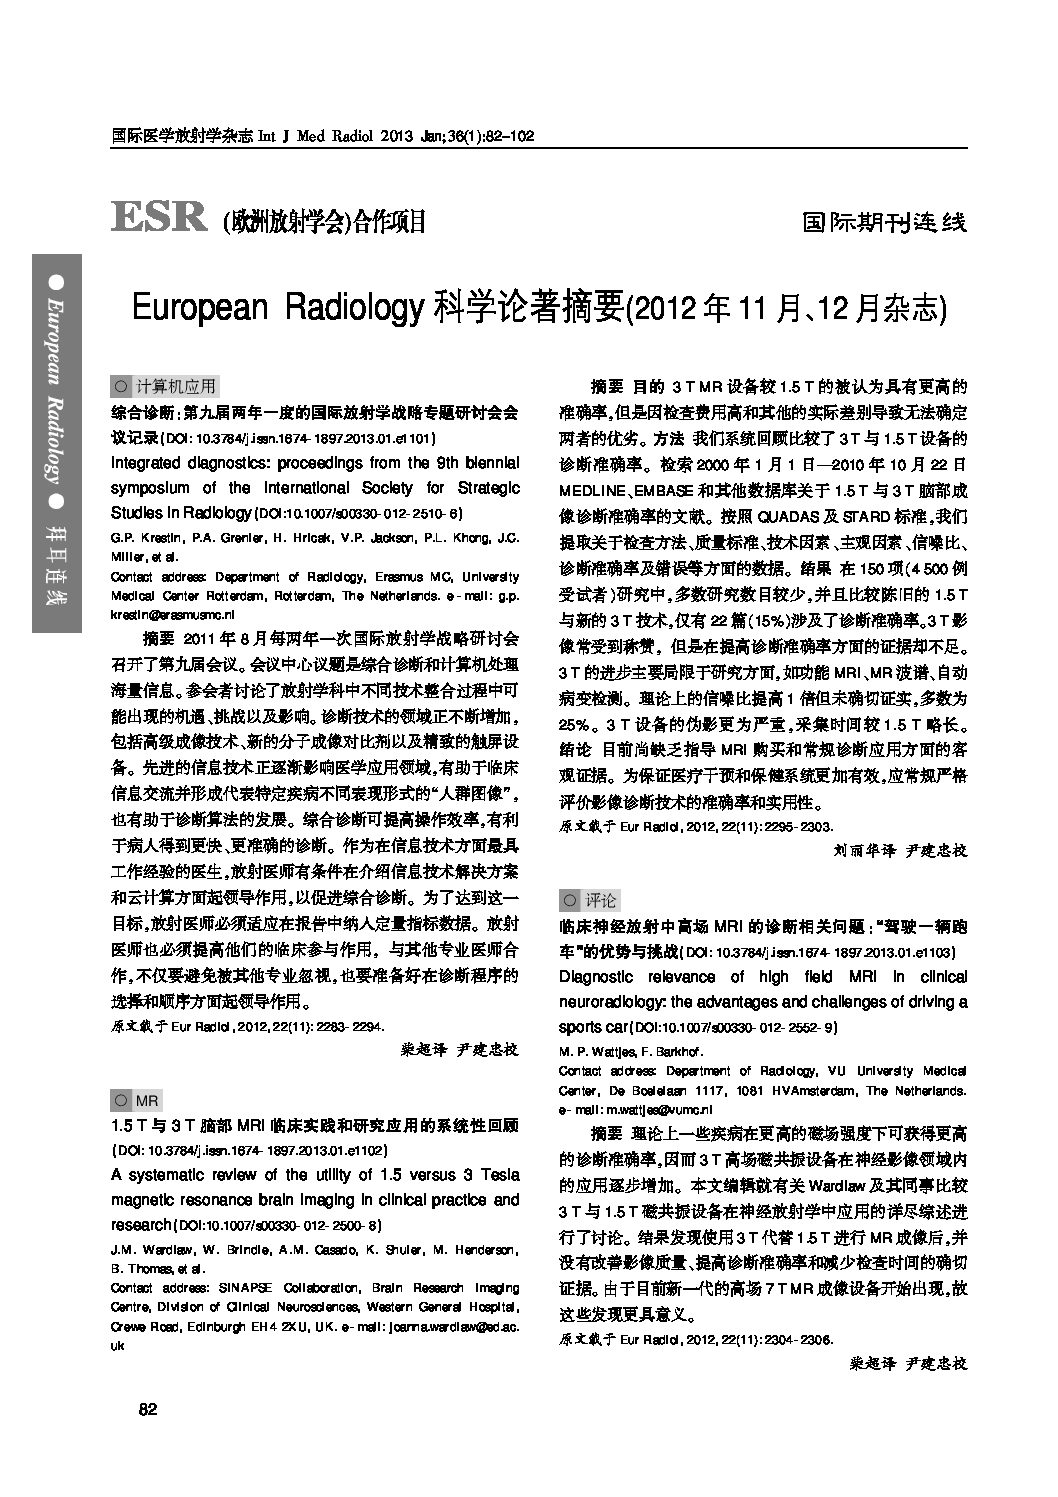 European Radiology Vol. 2012, November-December (760kb)